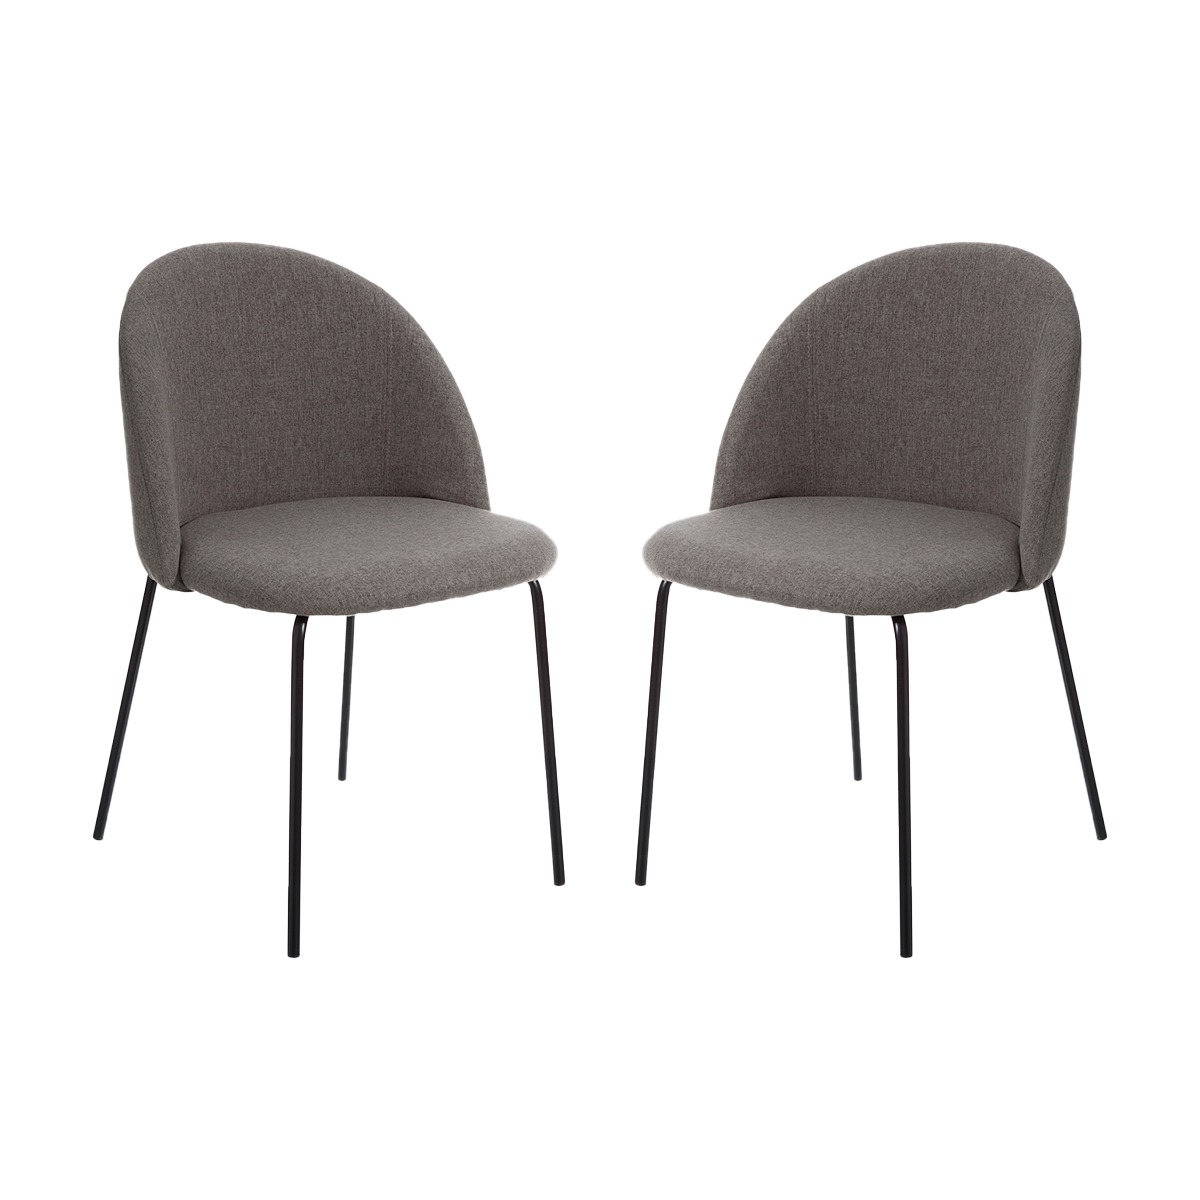 Juego de 2 sillas tejido-metal moderno gris